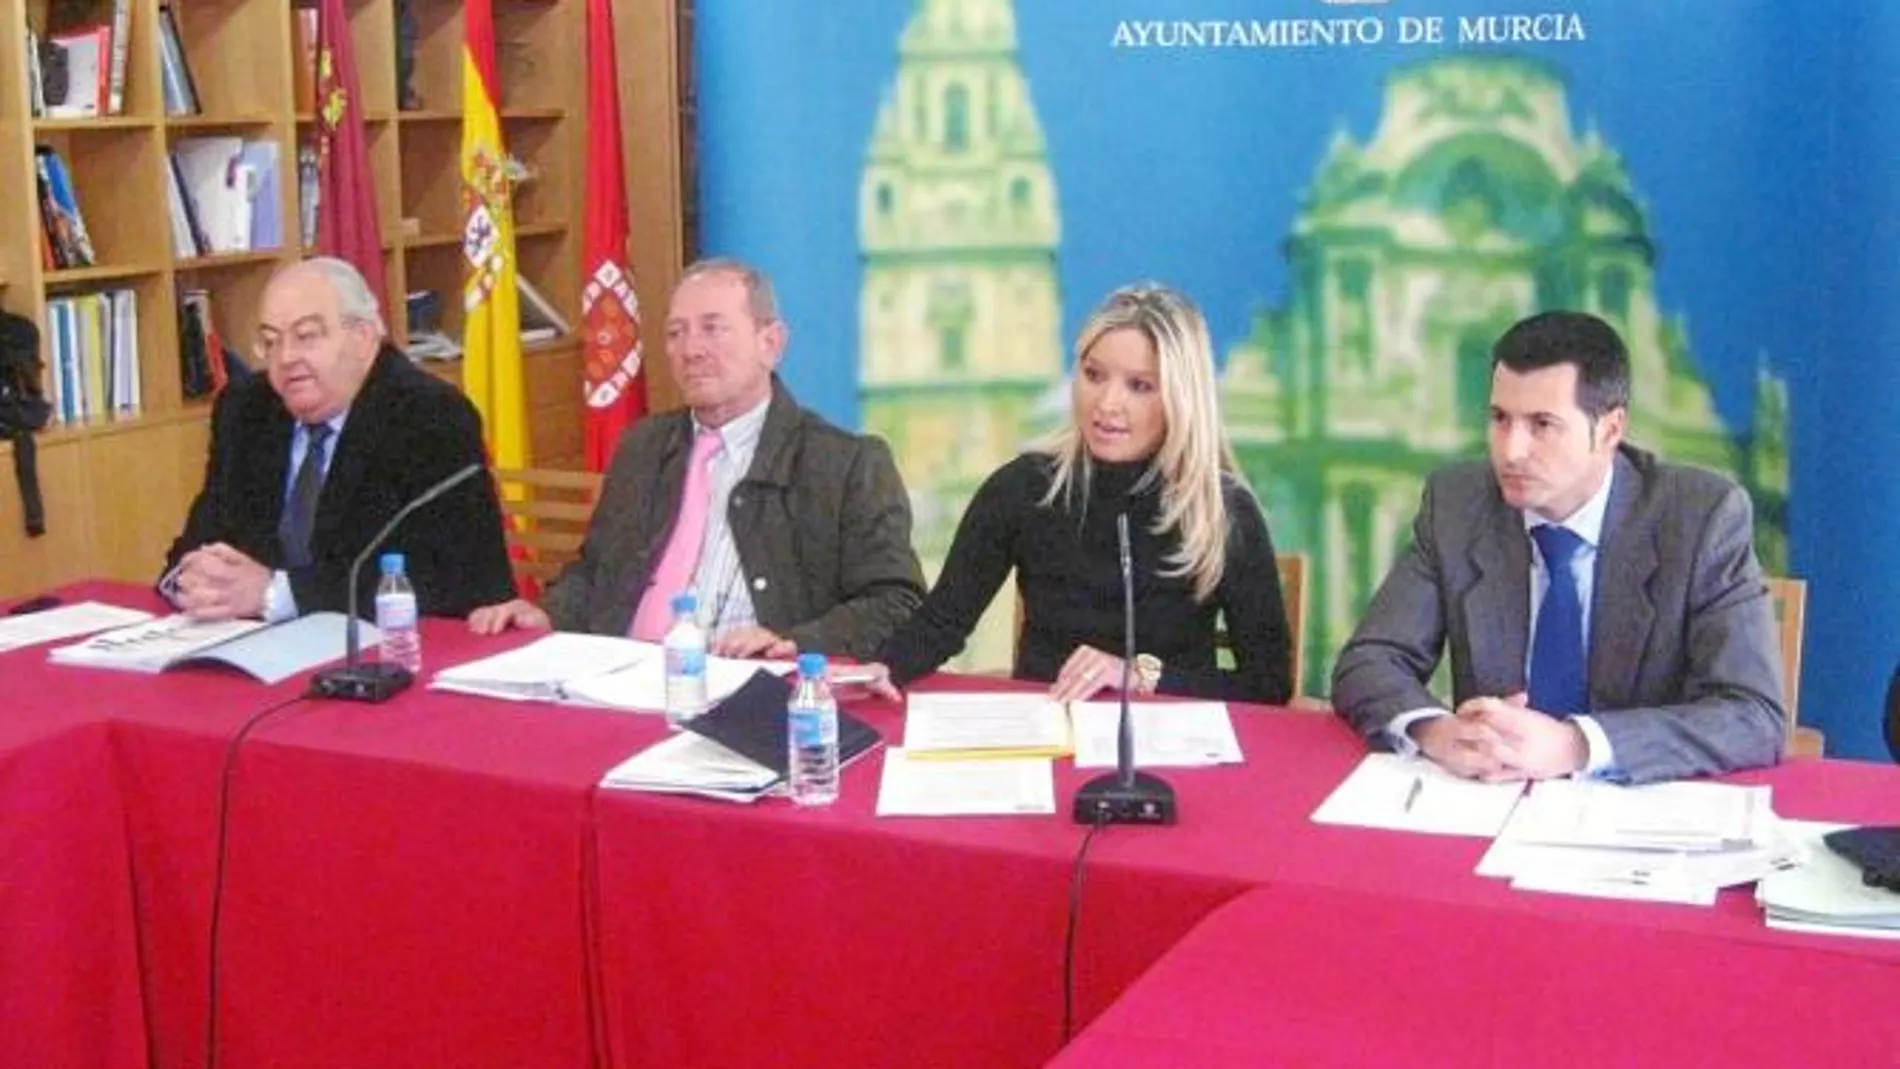 Arce, Herrero, Martínez y Bernabé, ayer en la presentación de las partidas presupuestarias de sus áreas